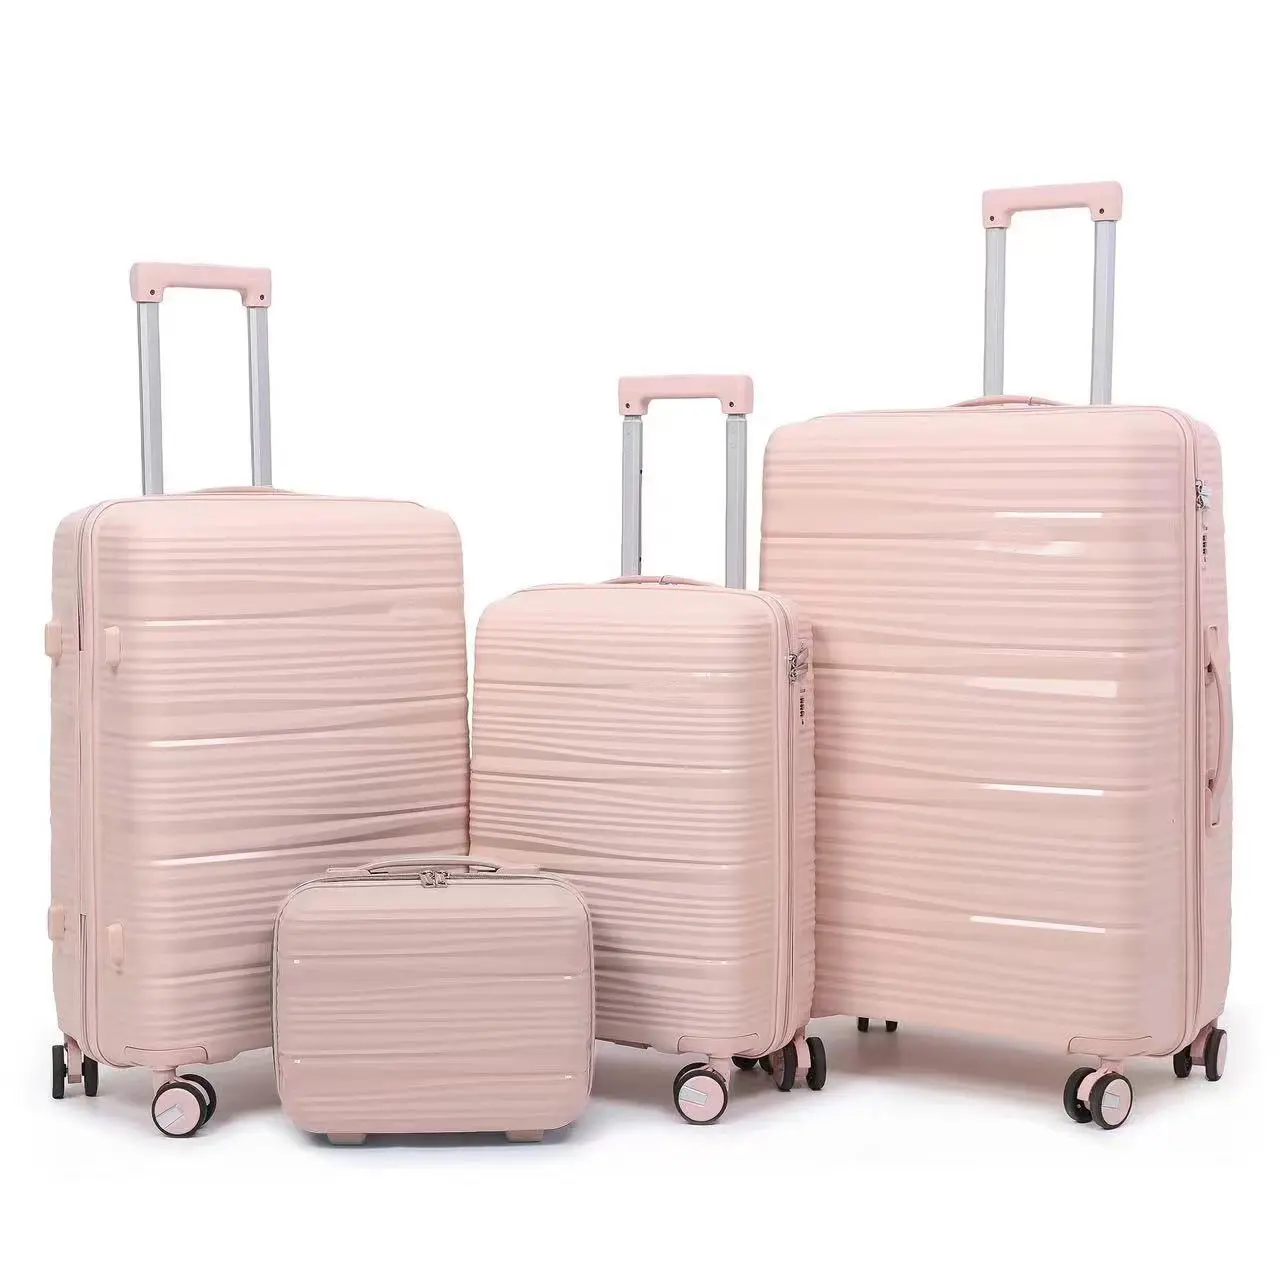 4 ensembles de bagages de voyage avec matériau PP résistant aux rayures Ensemble de bagages d'affaires pour hommes femmes Sac PP super léger